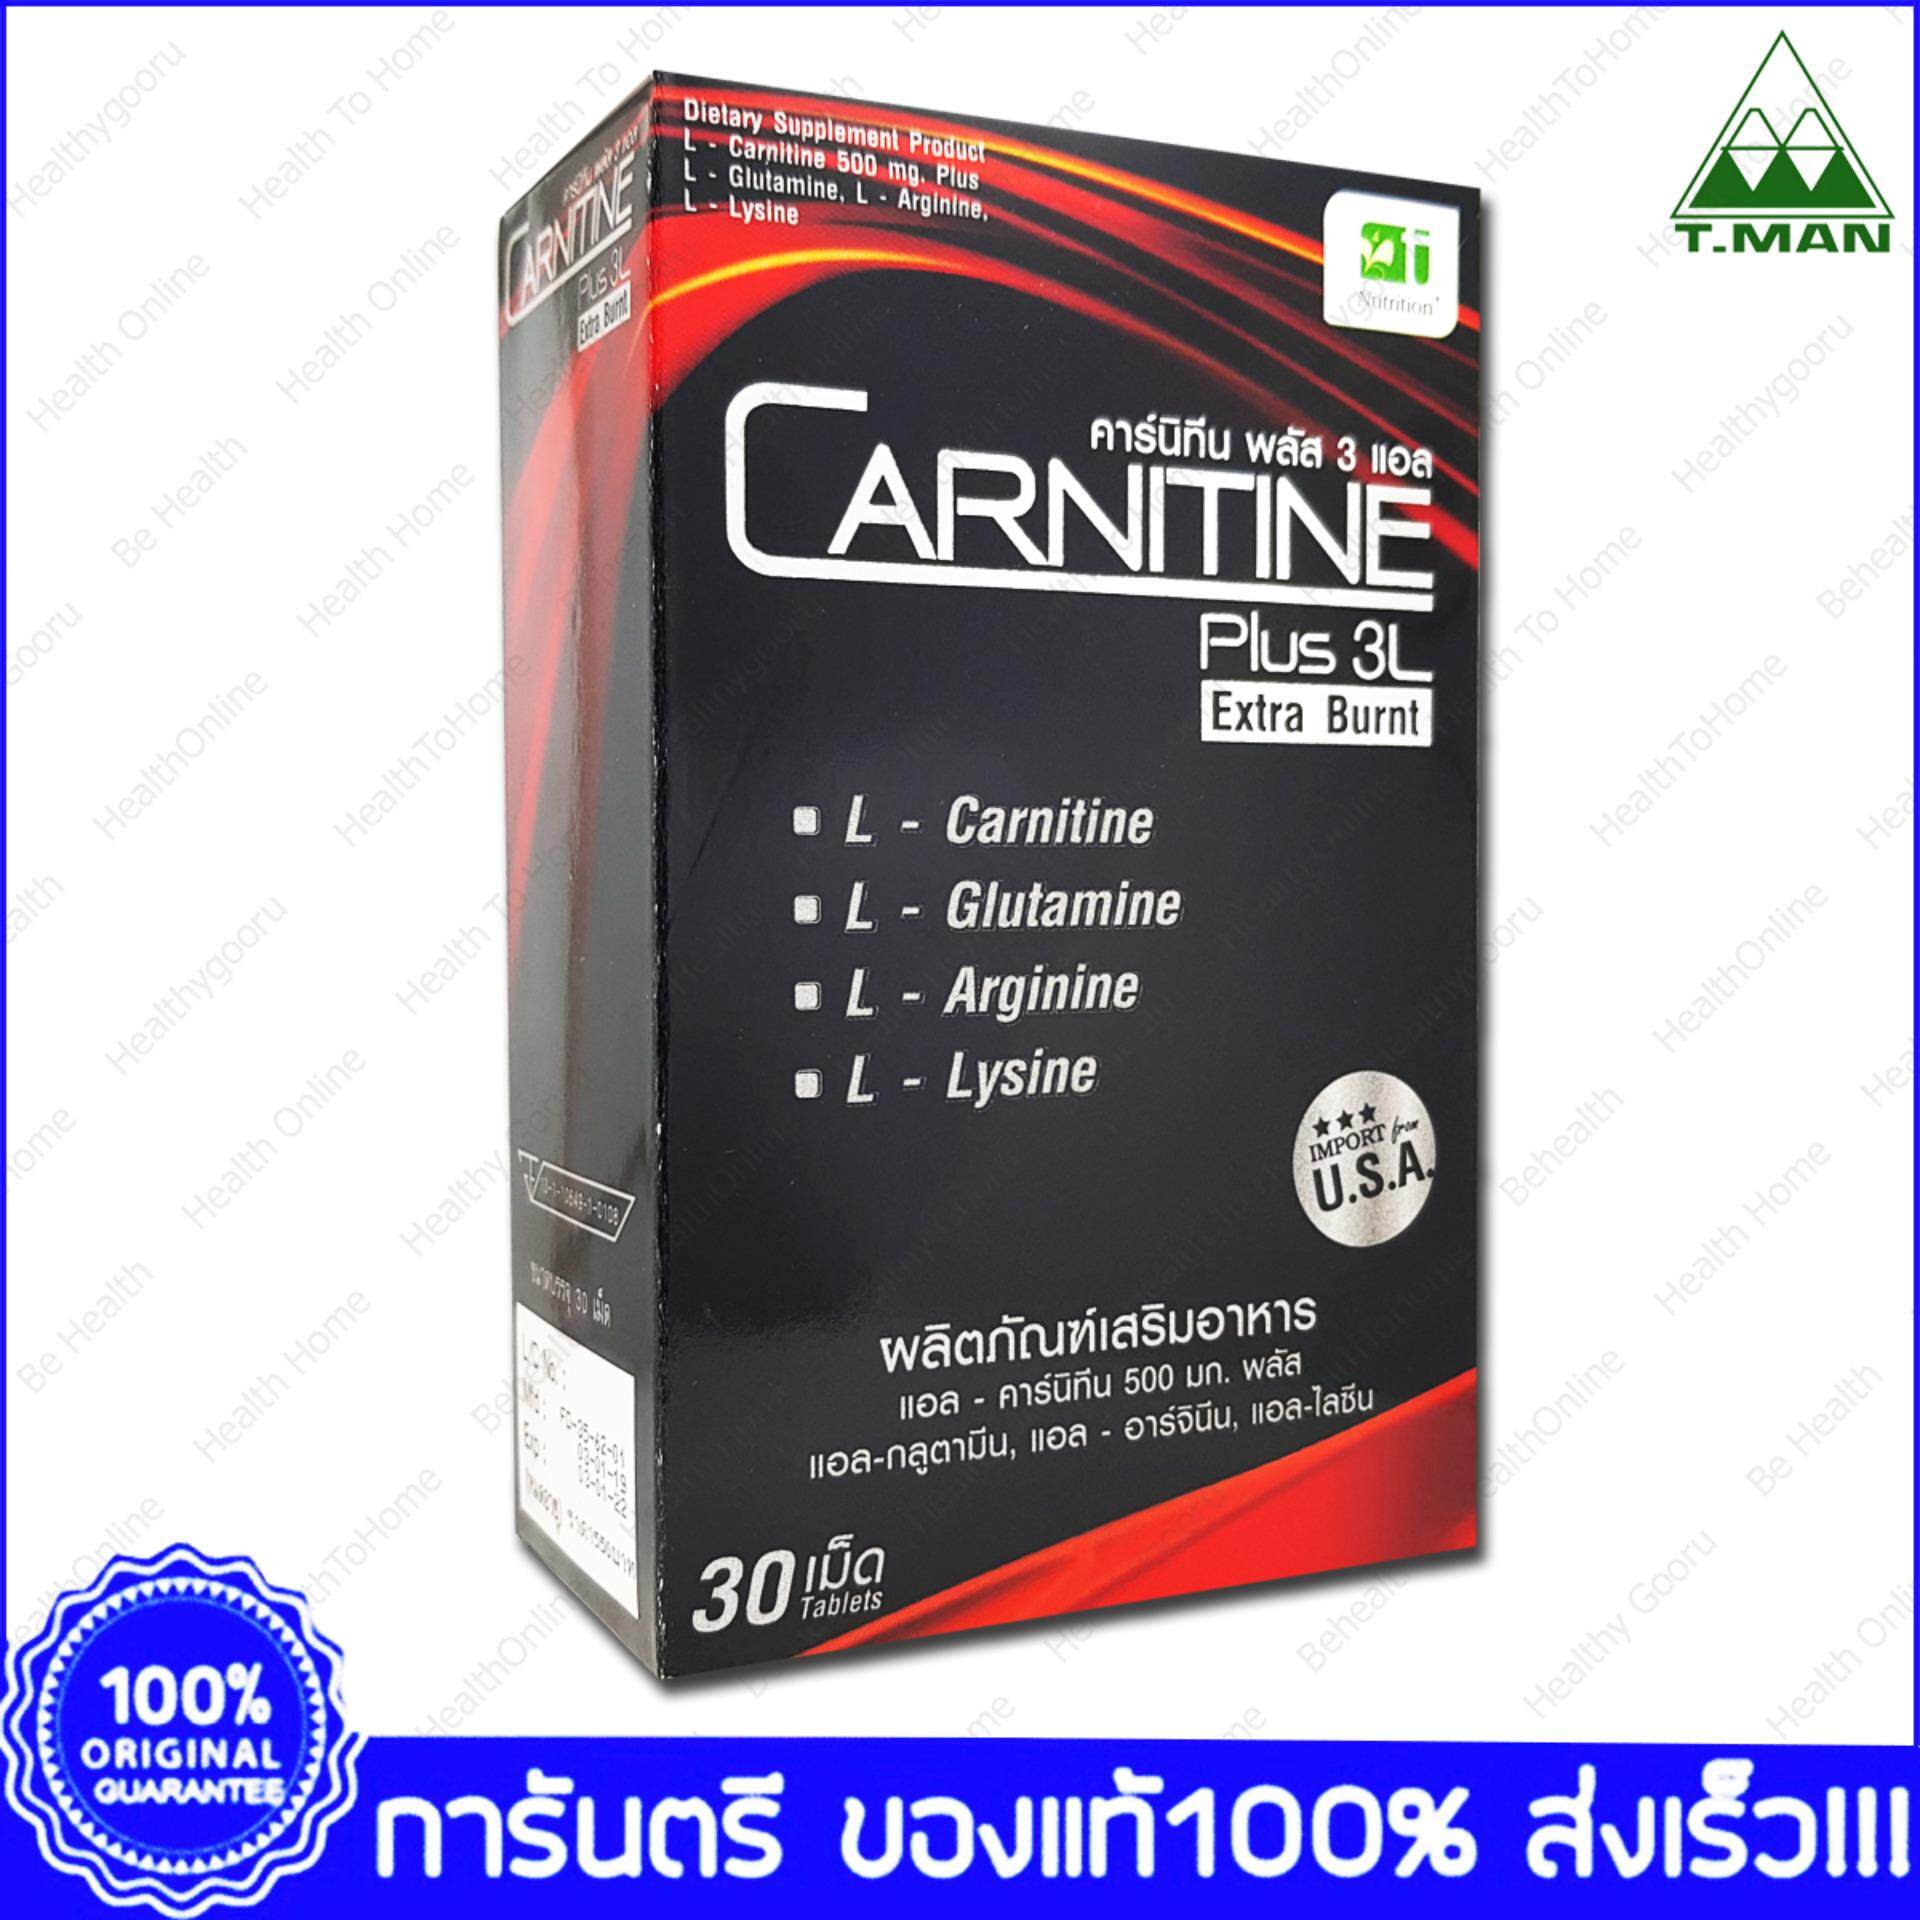 คาร์นิทีน พลัส 3 แอล สูตรเร่งเบิร์น Carnitine Plus 3L Extra Burnt 30 Tab.X 1 Box